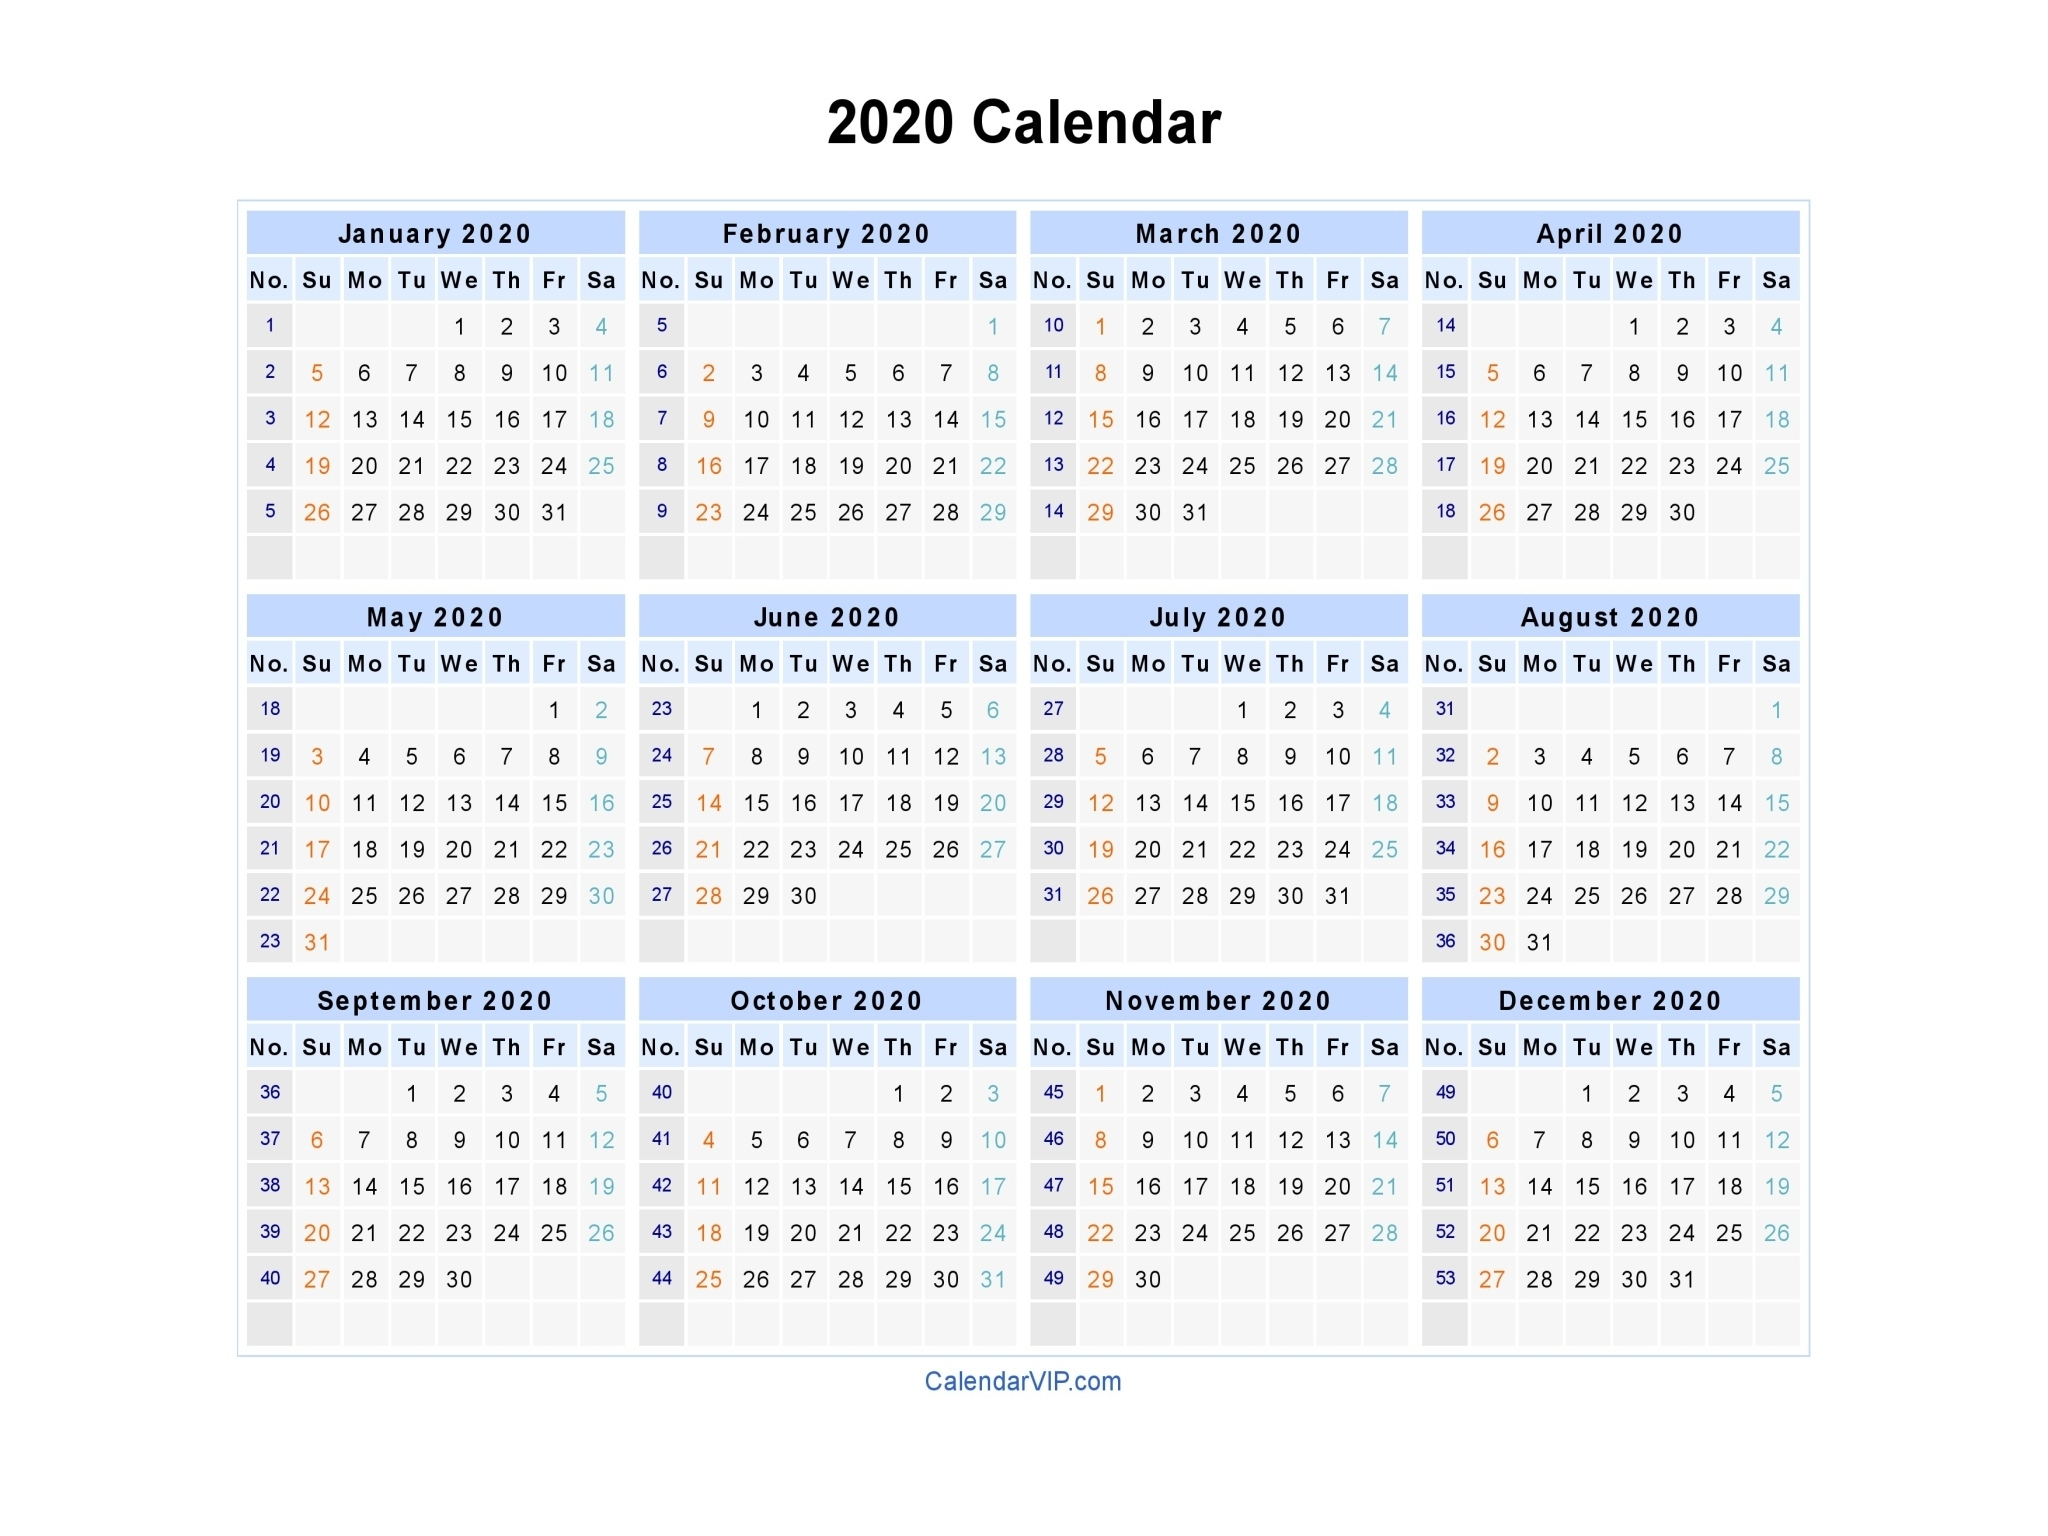 2020 calendar printable with week numbers